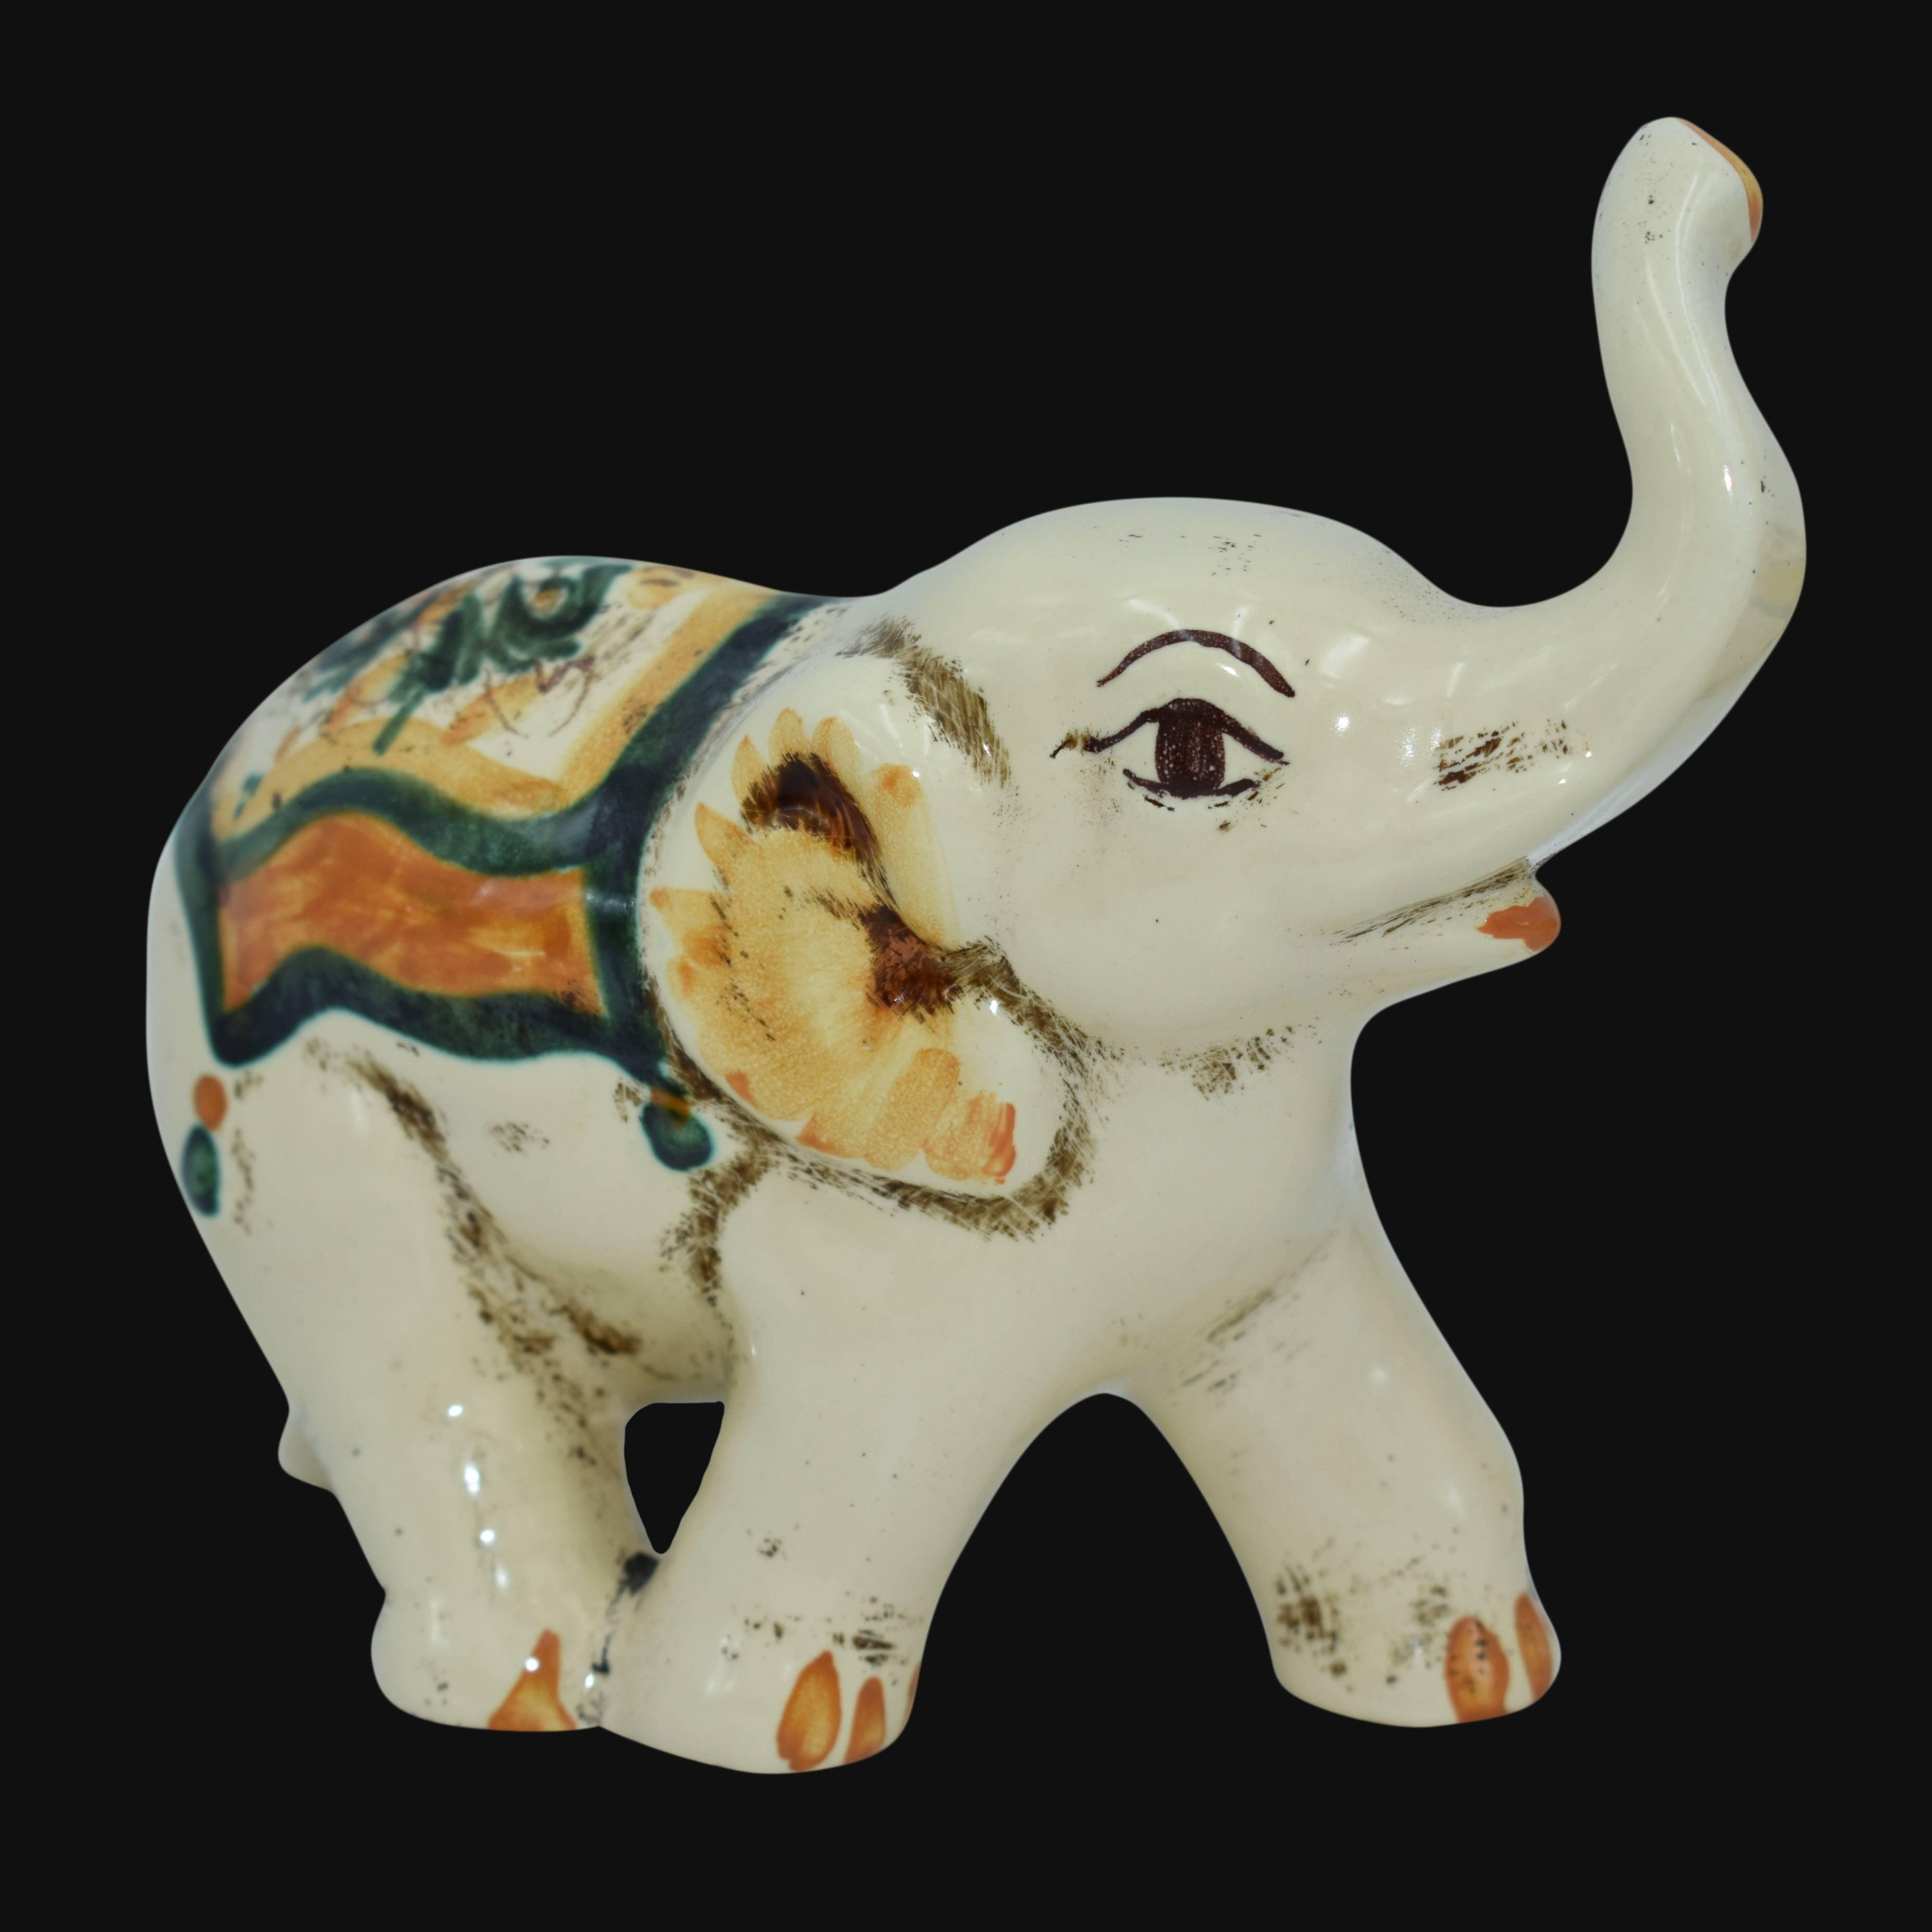 Elefante in ceramica s. arte verde e arancio - Ceramiche di Caltagirone Sofia - Ceramiche di Caltagirone Sofia